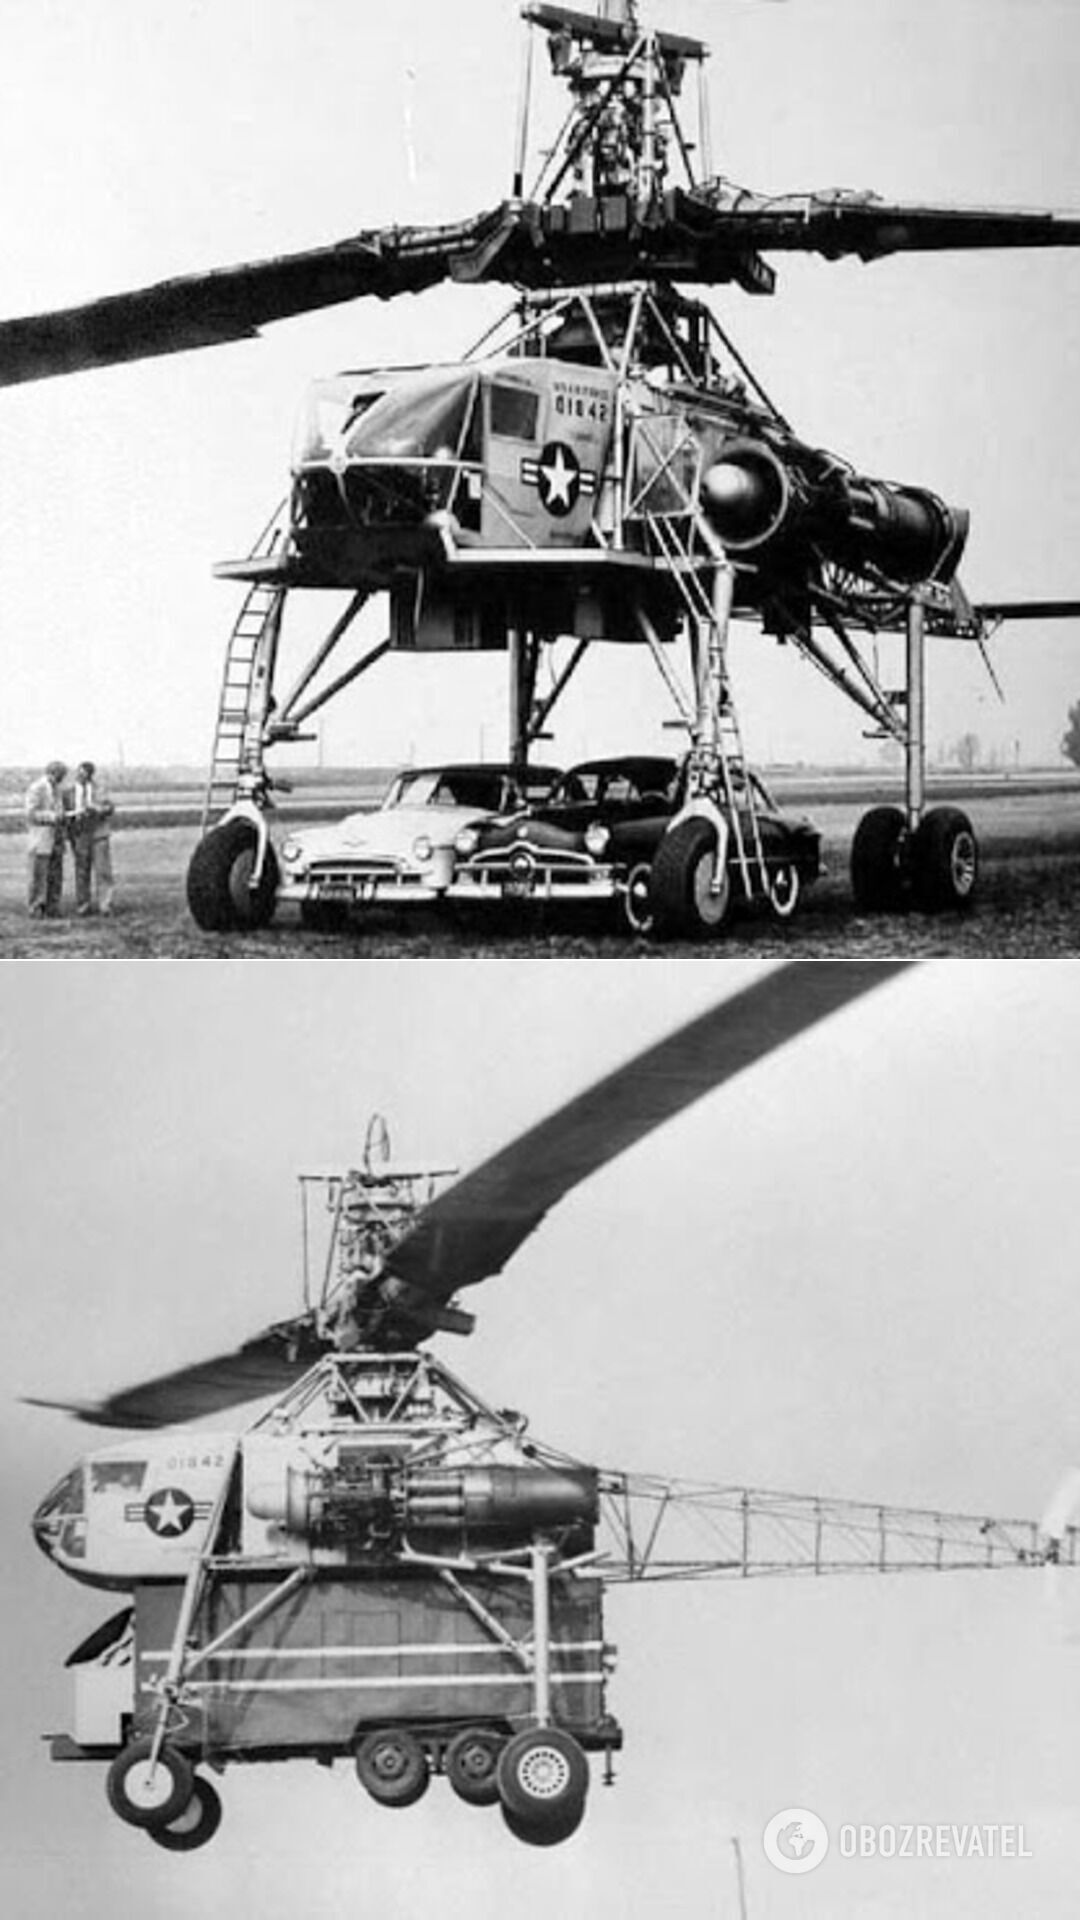 Літальний кран XH-17 – побудований американською військово-промисловою авіабудівною компанією Hughes Aircraft вертоліт, який мав титанічний ротор діаметром 40 метрів (12-поверховий будинок) і вмів піднімати майже 7 тонн